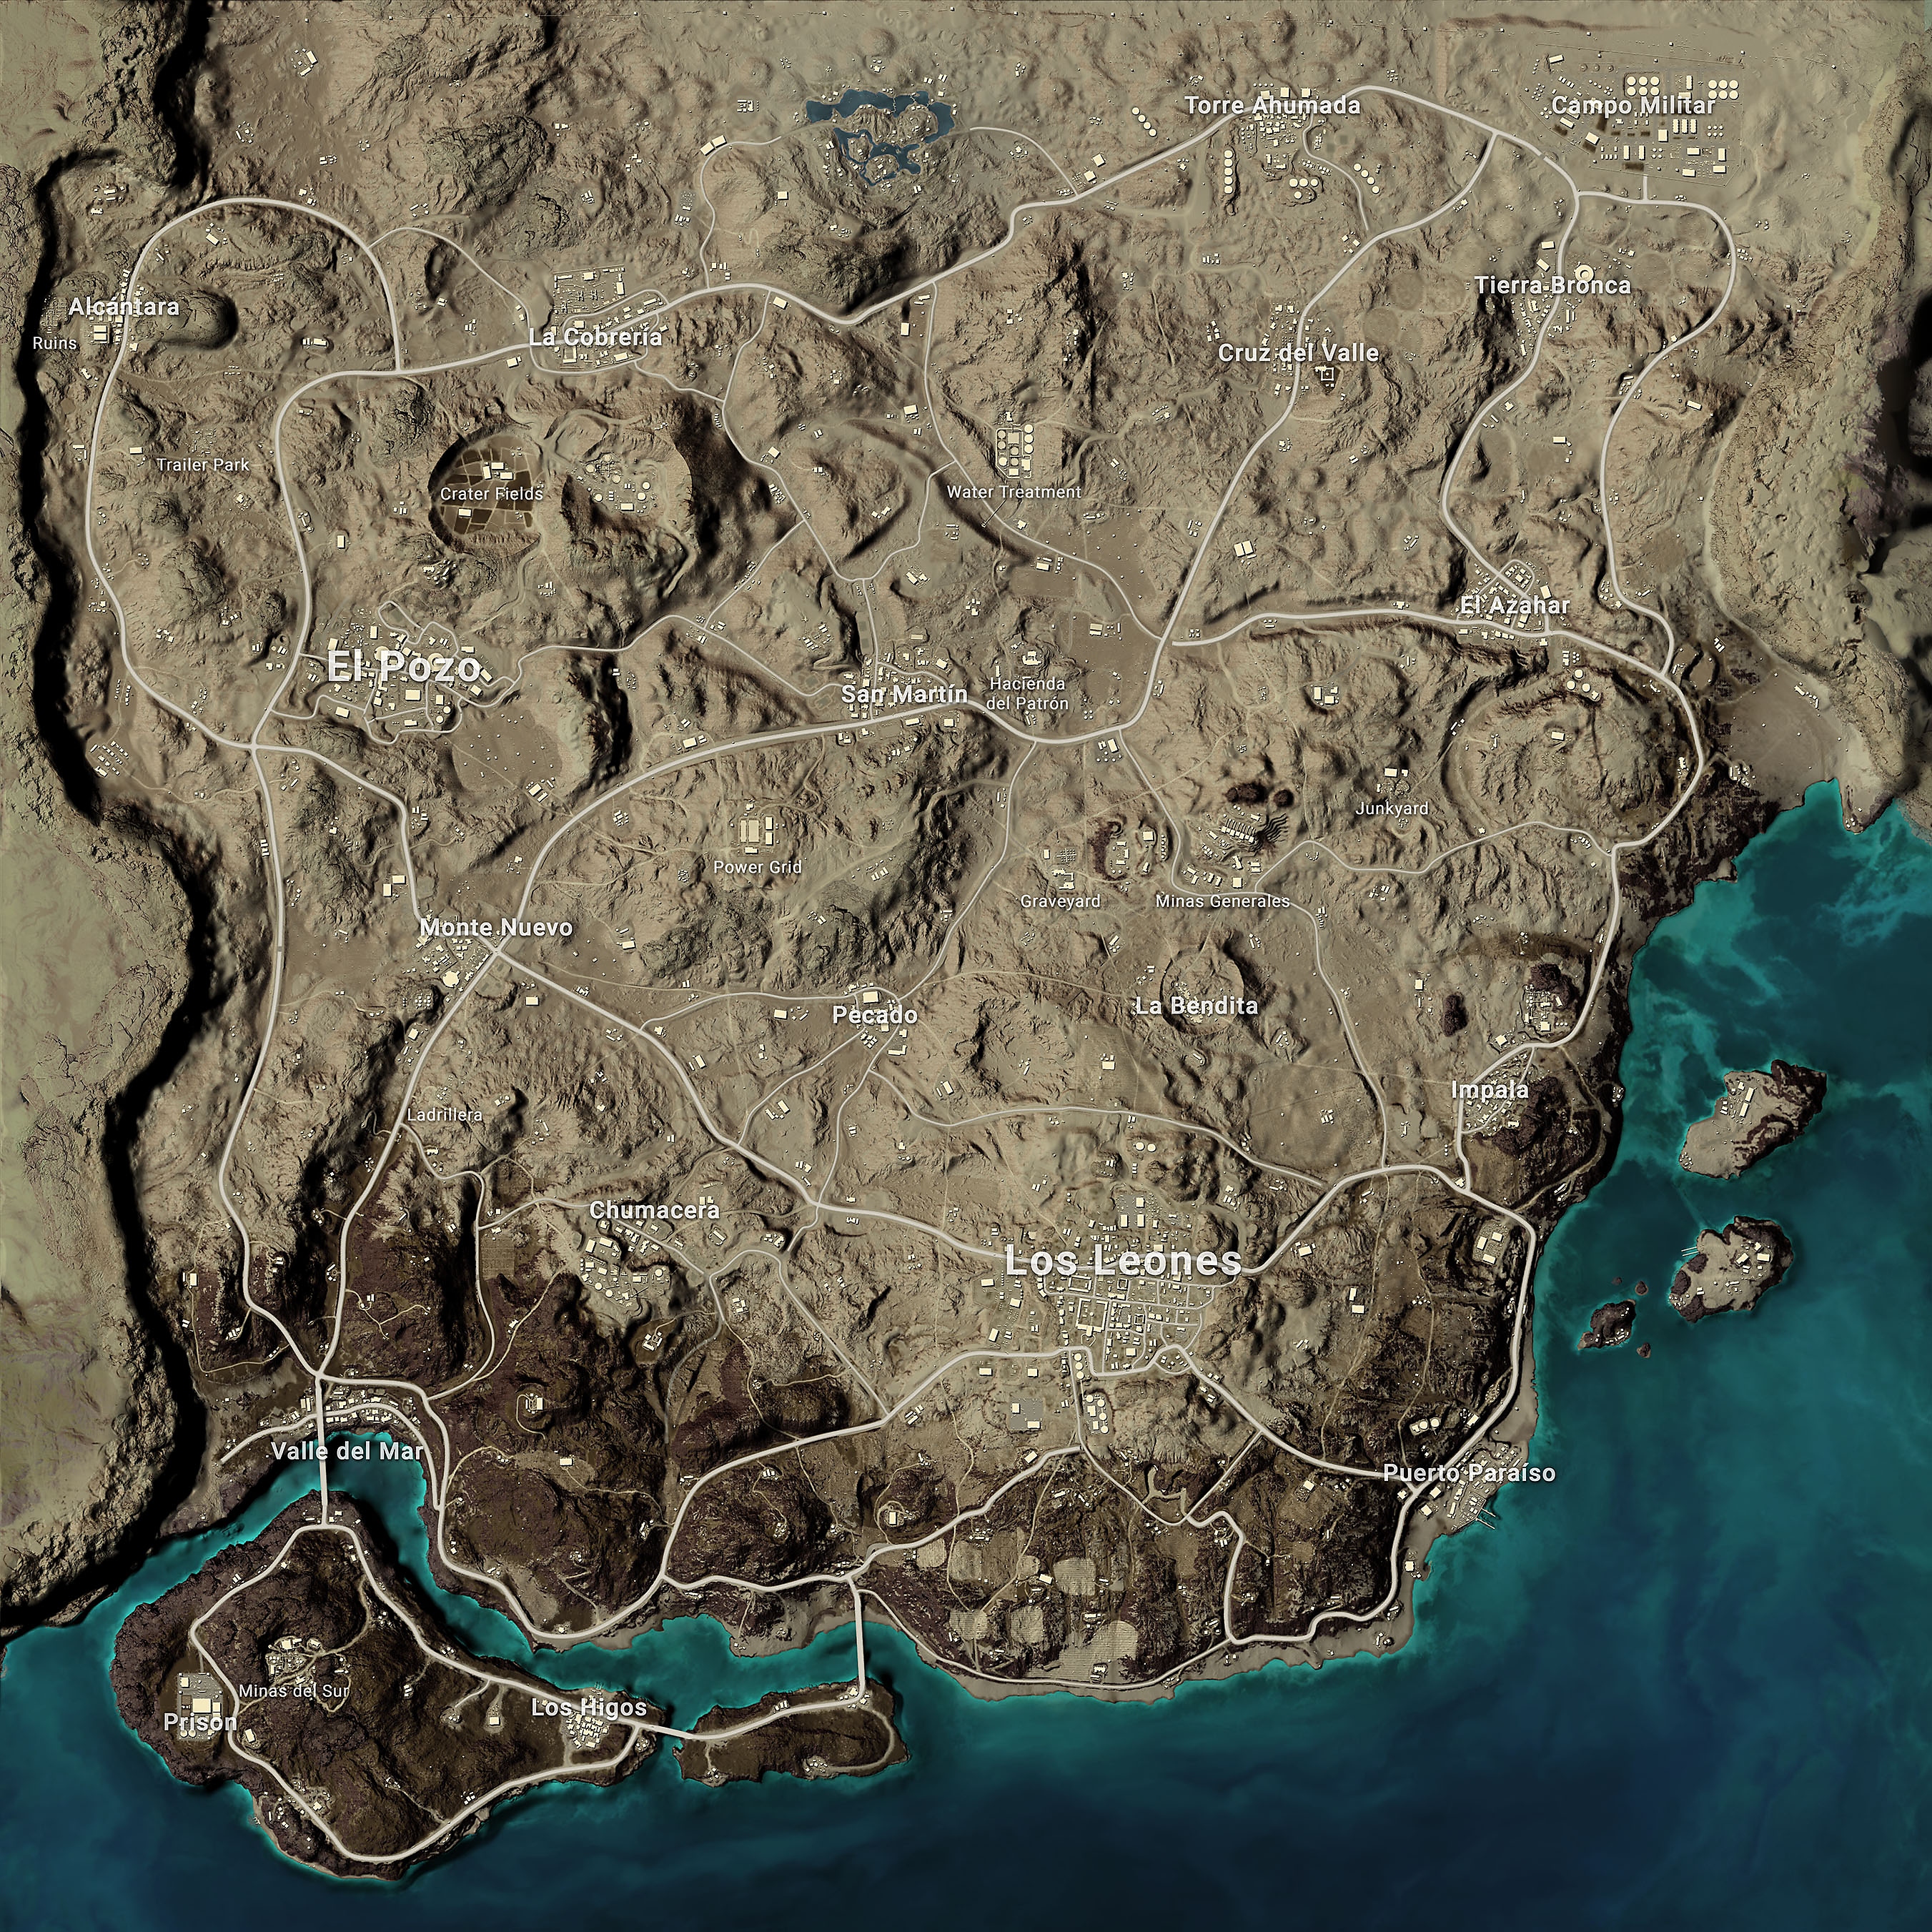 PUBG: Battlegrounds-Karte – Miramar